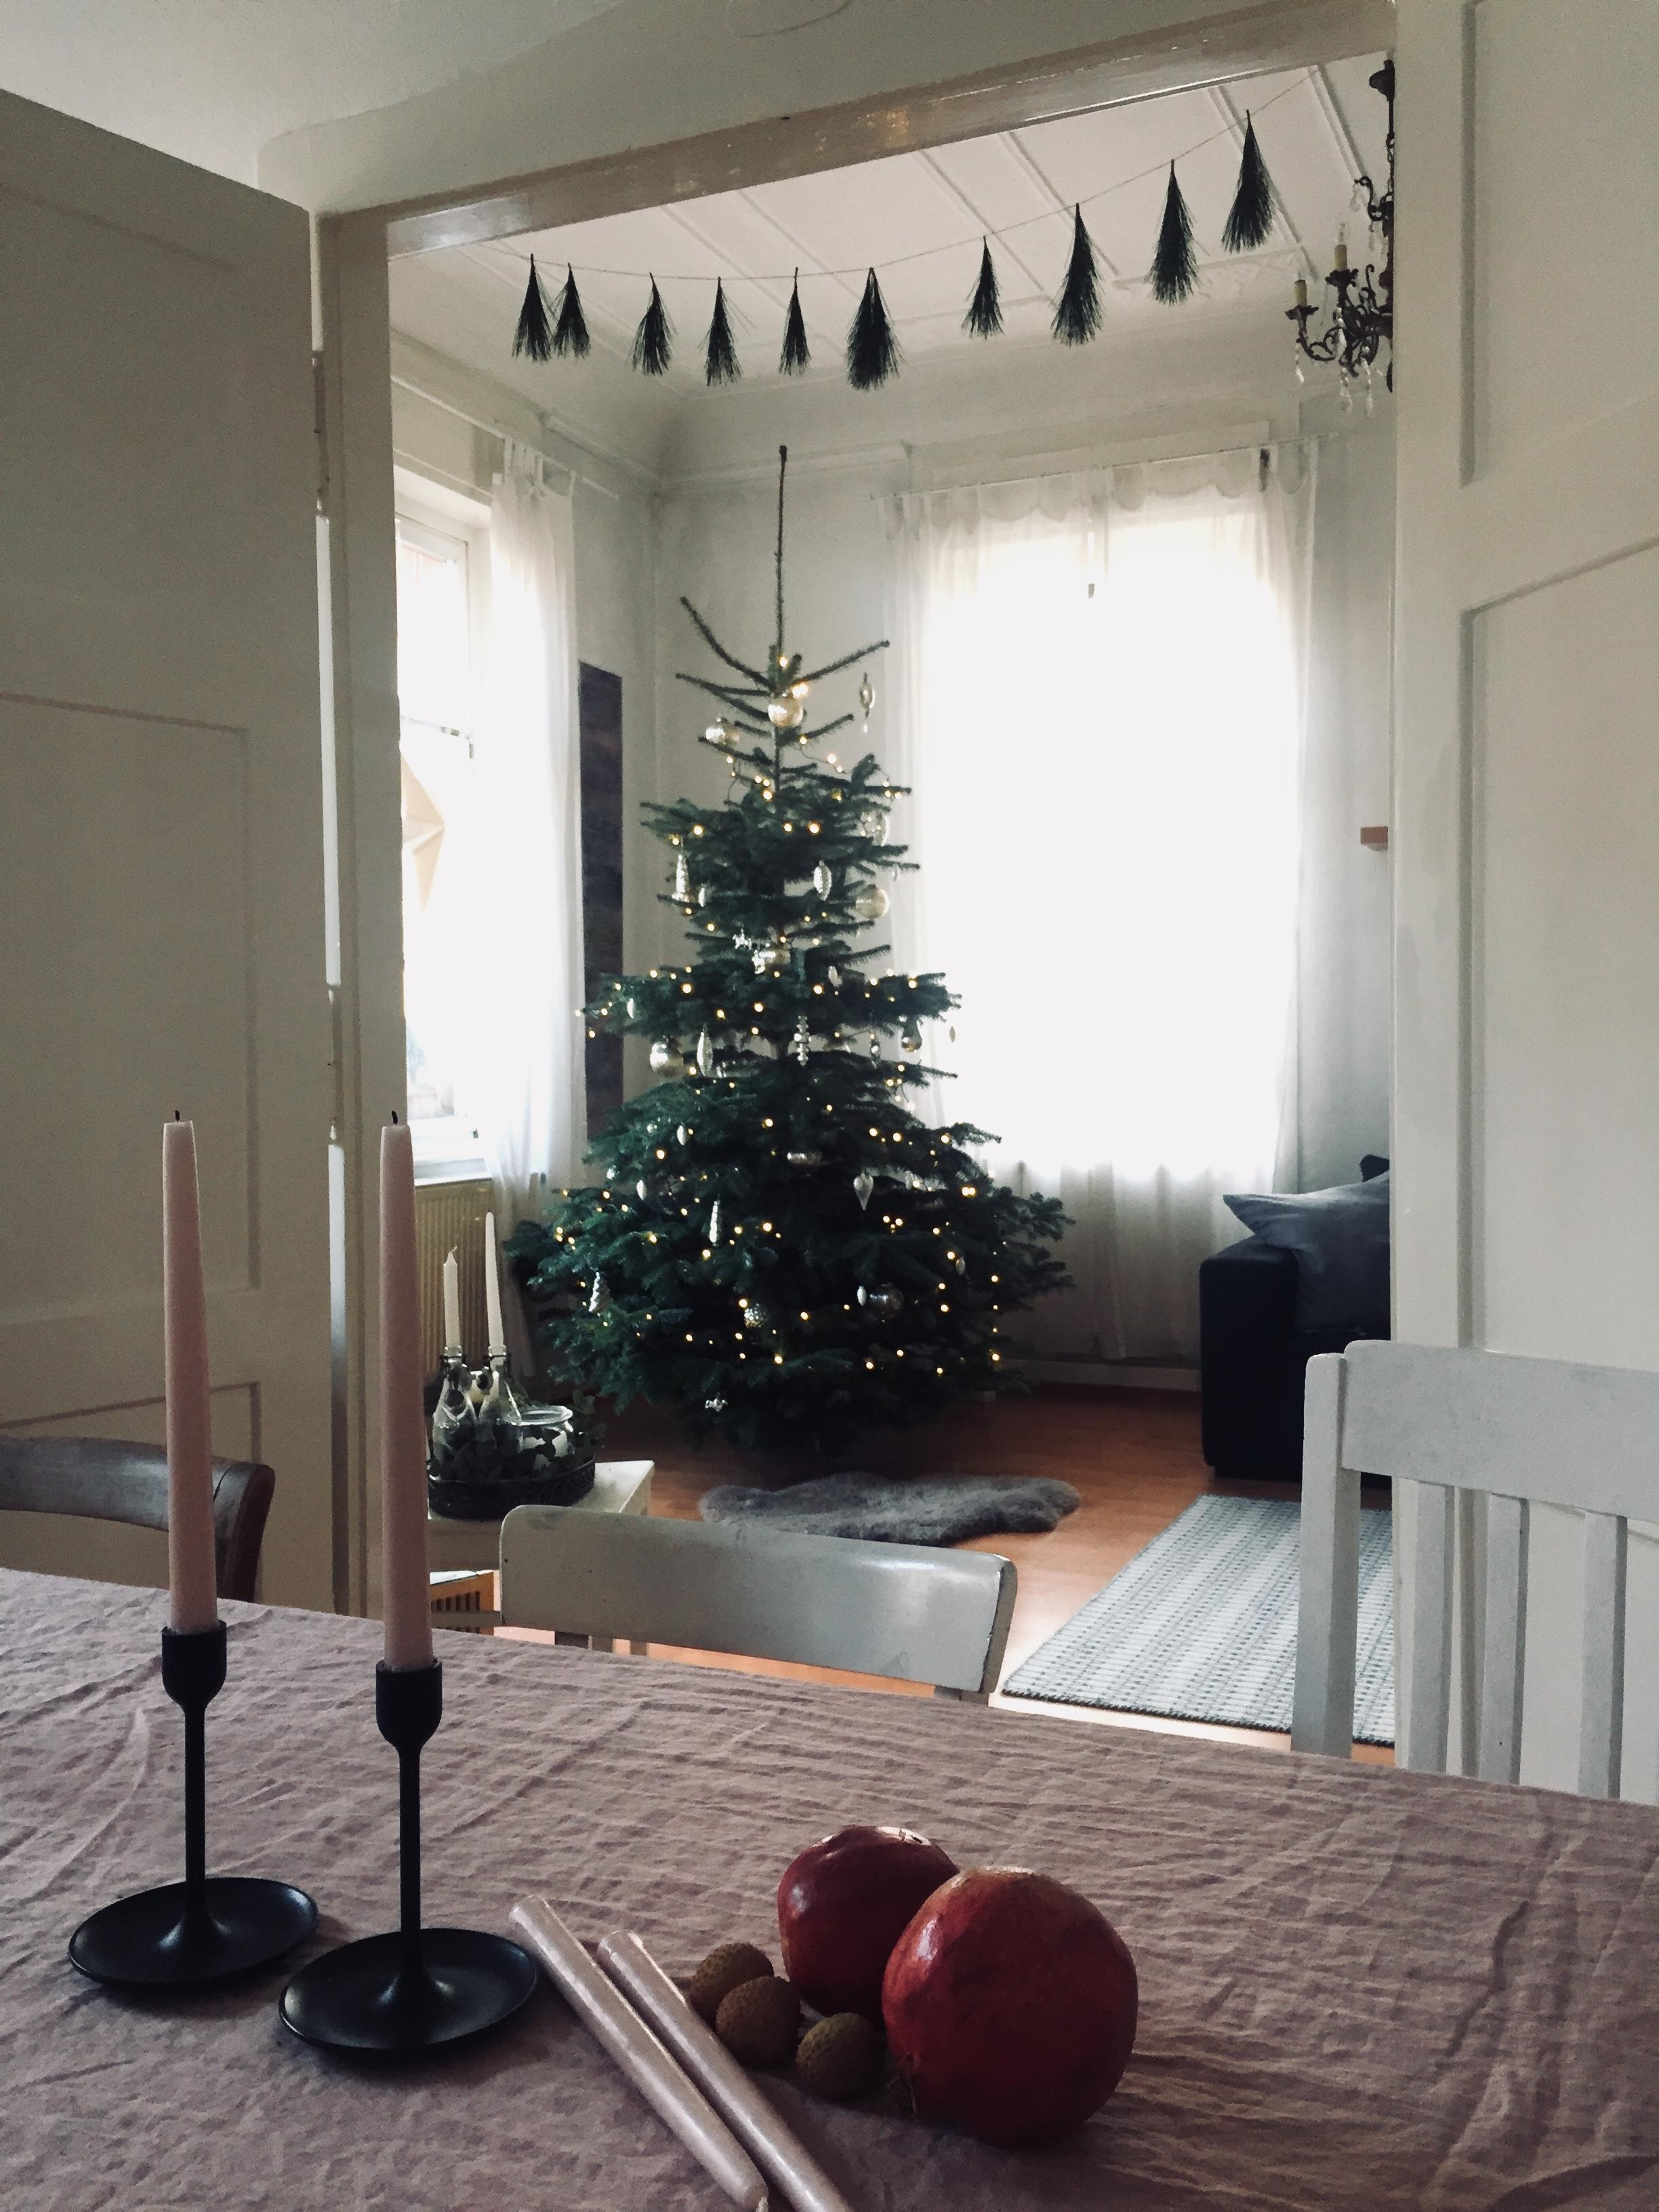 Da is er, der #weihnachtsbaum. #vorfreude #xmas #couchstyle #weihnachtsdeko #hygge 